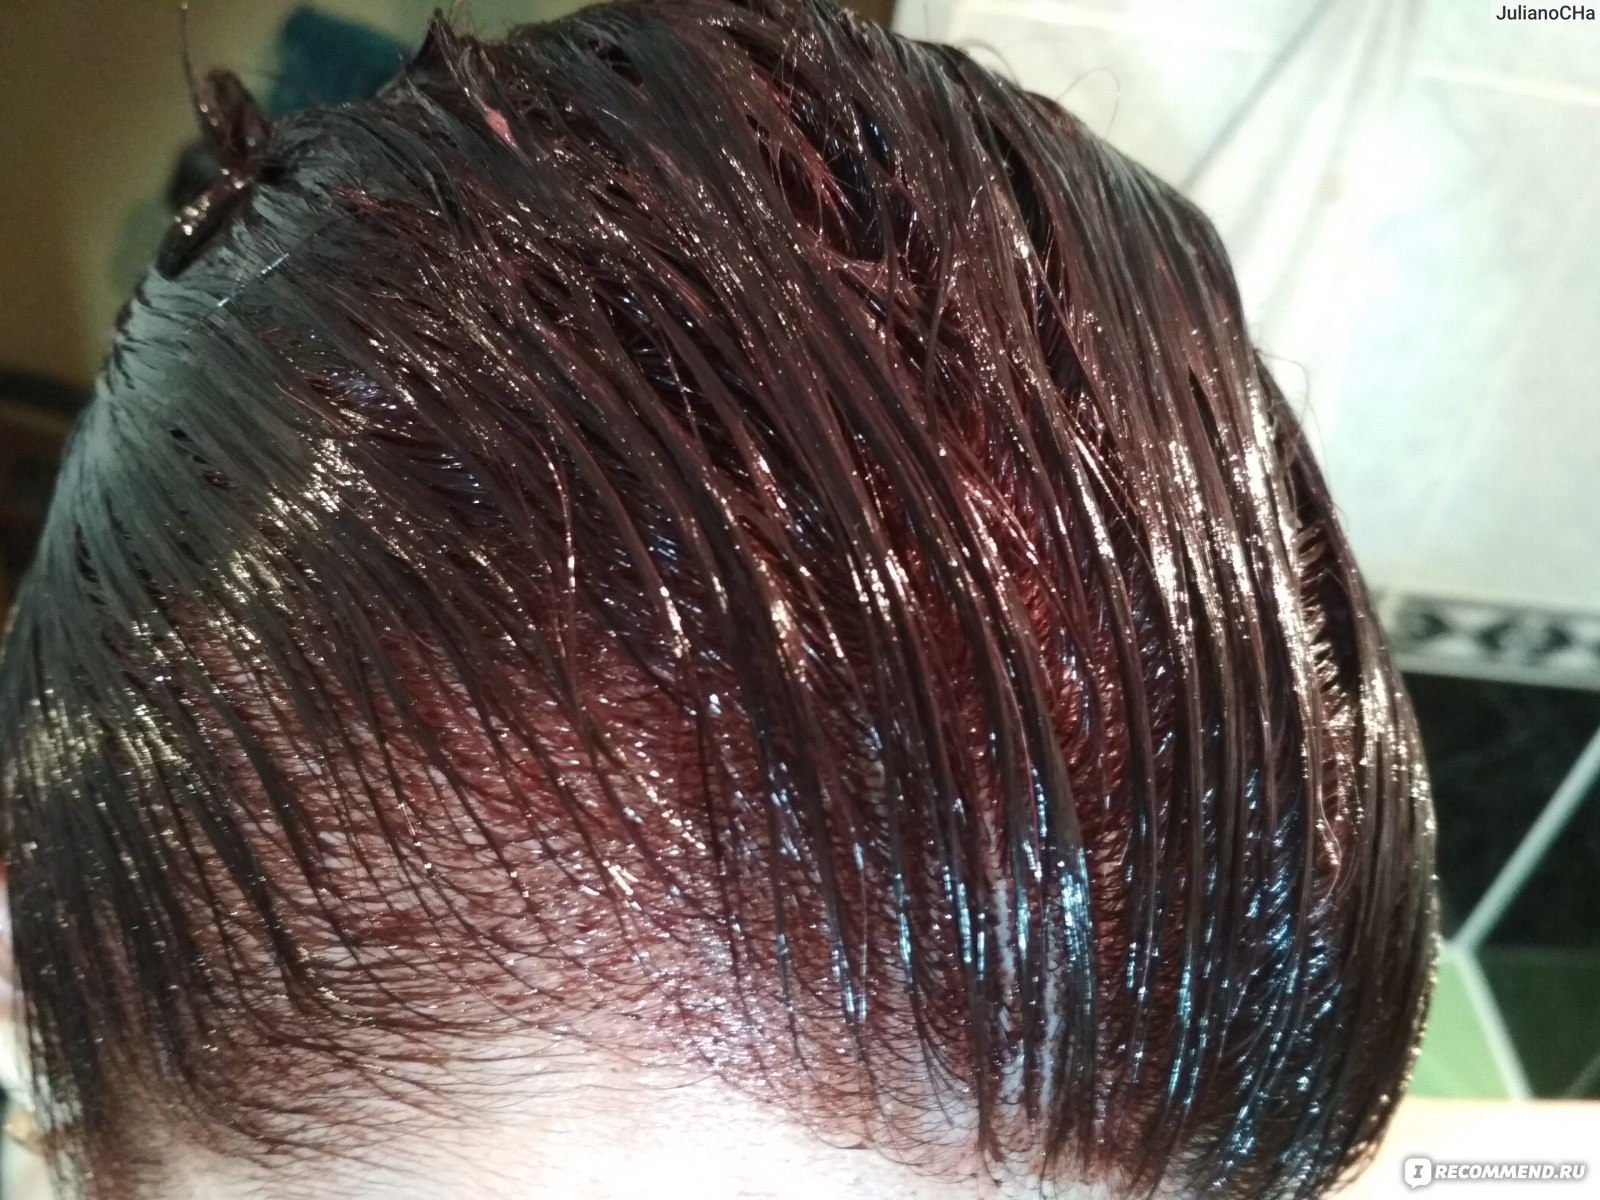 палисандр цвет волос фото эстель